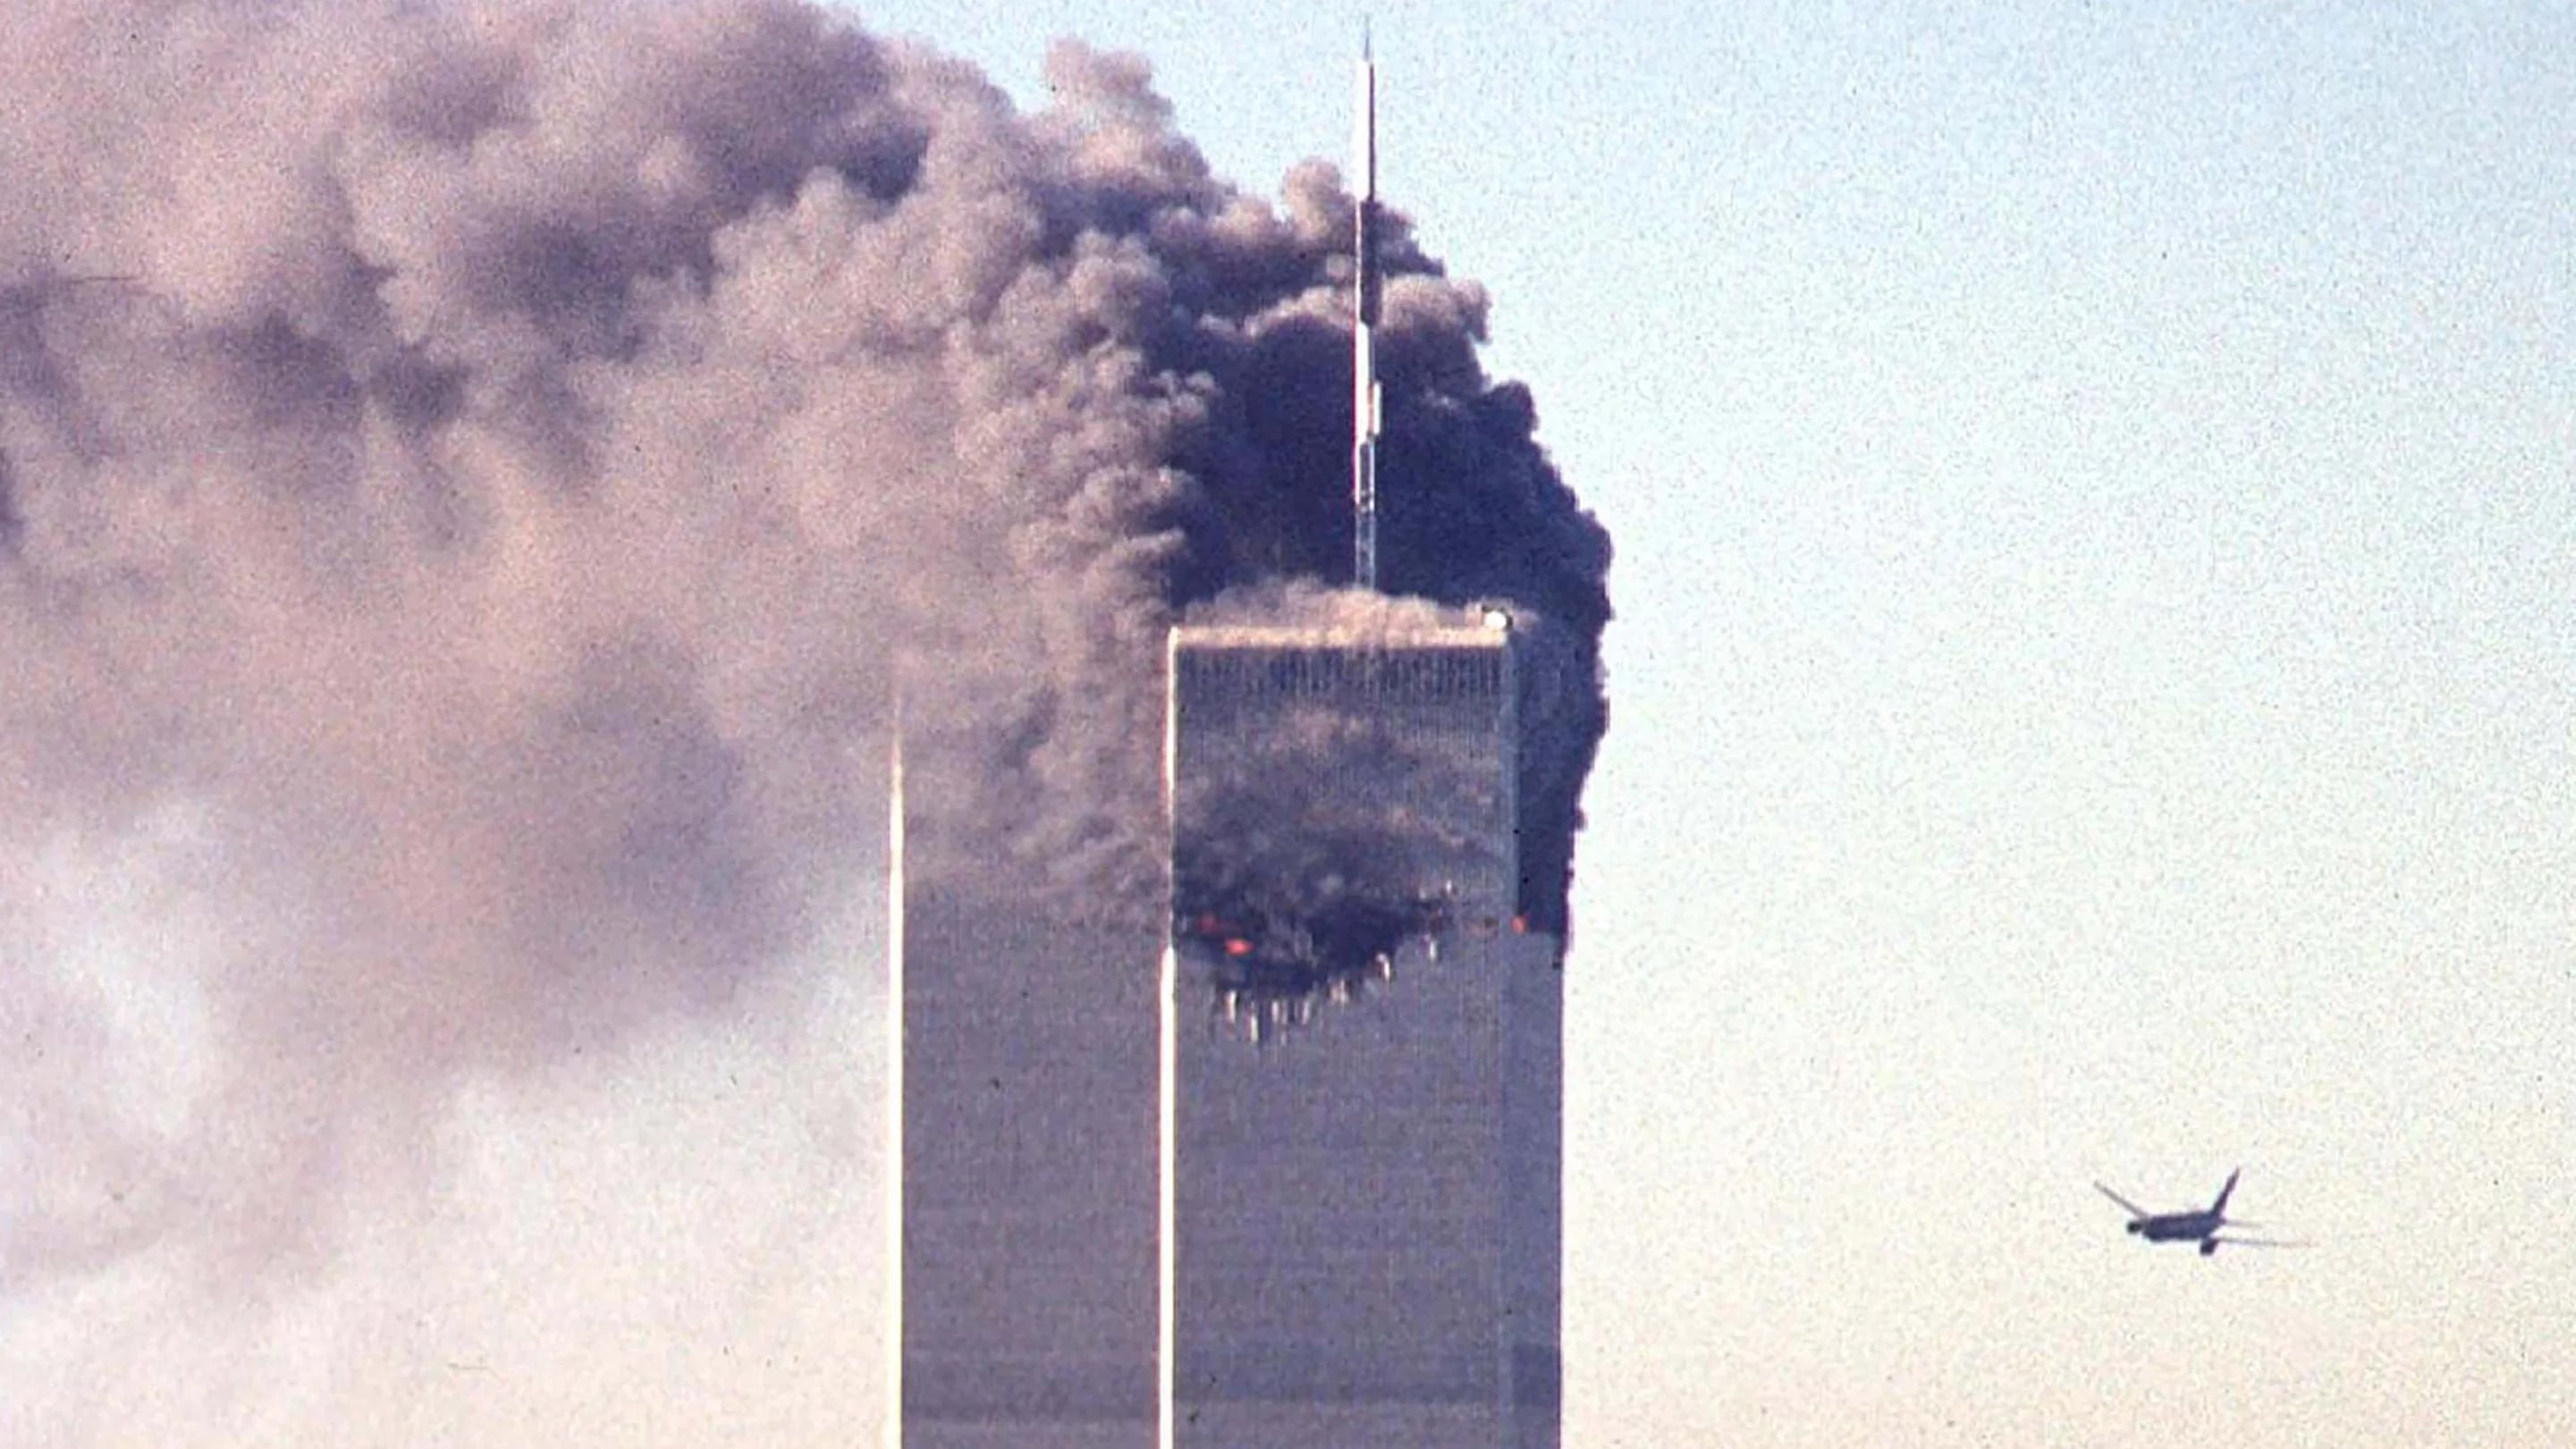 (ARCHIVO) En esta foto de archivo tomada el 11 de septiembre de 2001, un avión comercial secuestrado se aproxima a las torres gemelas del World Trade Center poco antes de estrellarse contra el emblemático rascacielos de Nueva York. - Los restos de otras dos víctimas del 11-S han sido identificados gracias a una avanzada tecnología de ADN, según anunciaron las autoridades de Nueva York el 7 de septiembre de 2021, pocos días antes del 20 aniversario de los atentados. La oficina del médico forense jefe de la ciudad informó de que había identificado formalmente a las víctimas 1.646 y 1.647 de los atentados de Al Qaeda contra las Torres Gemelas de Nueva York, en los que murieron 2.753 personas. (Foto de SETH MCALLISTER / AFP)